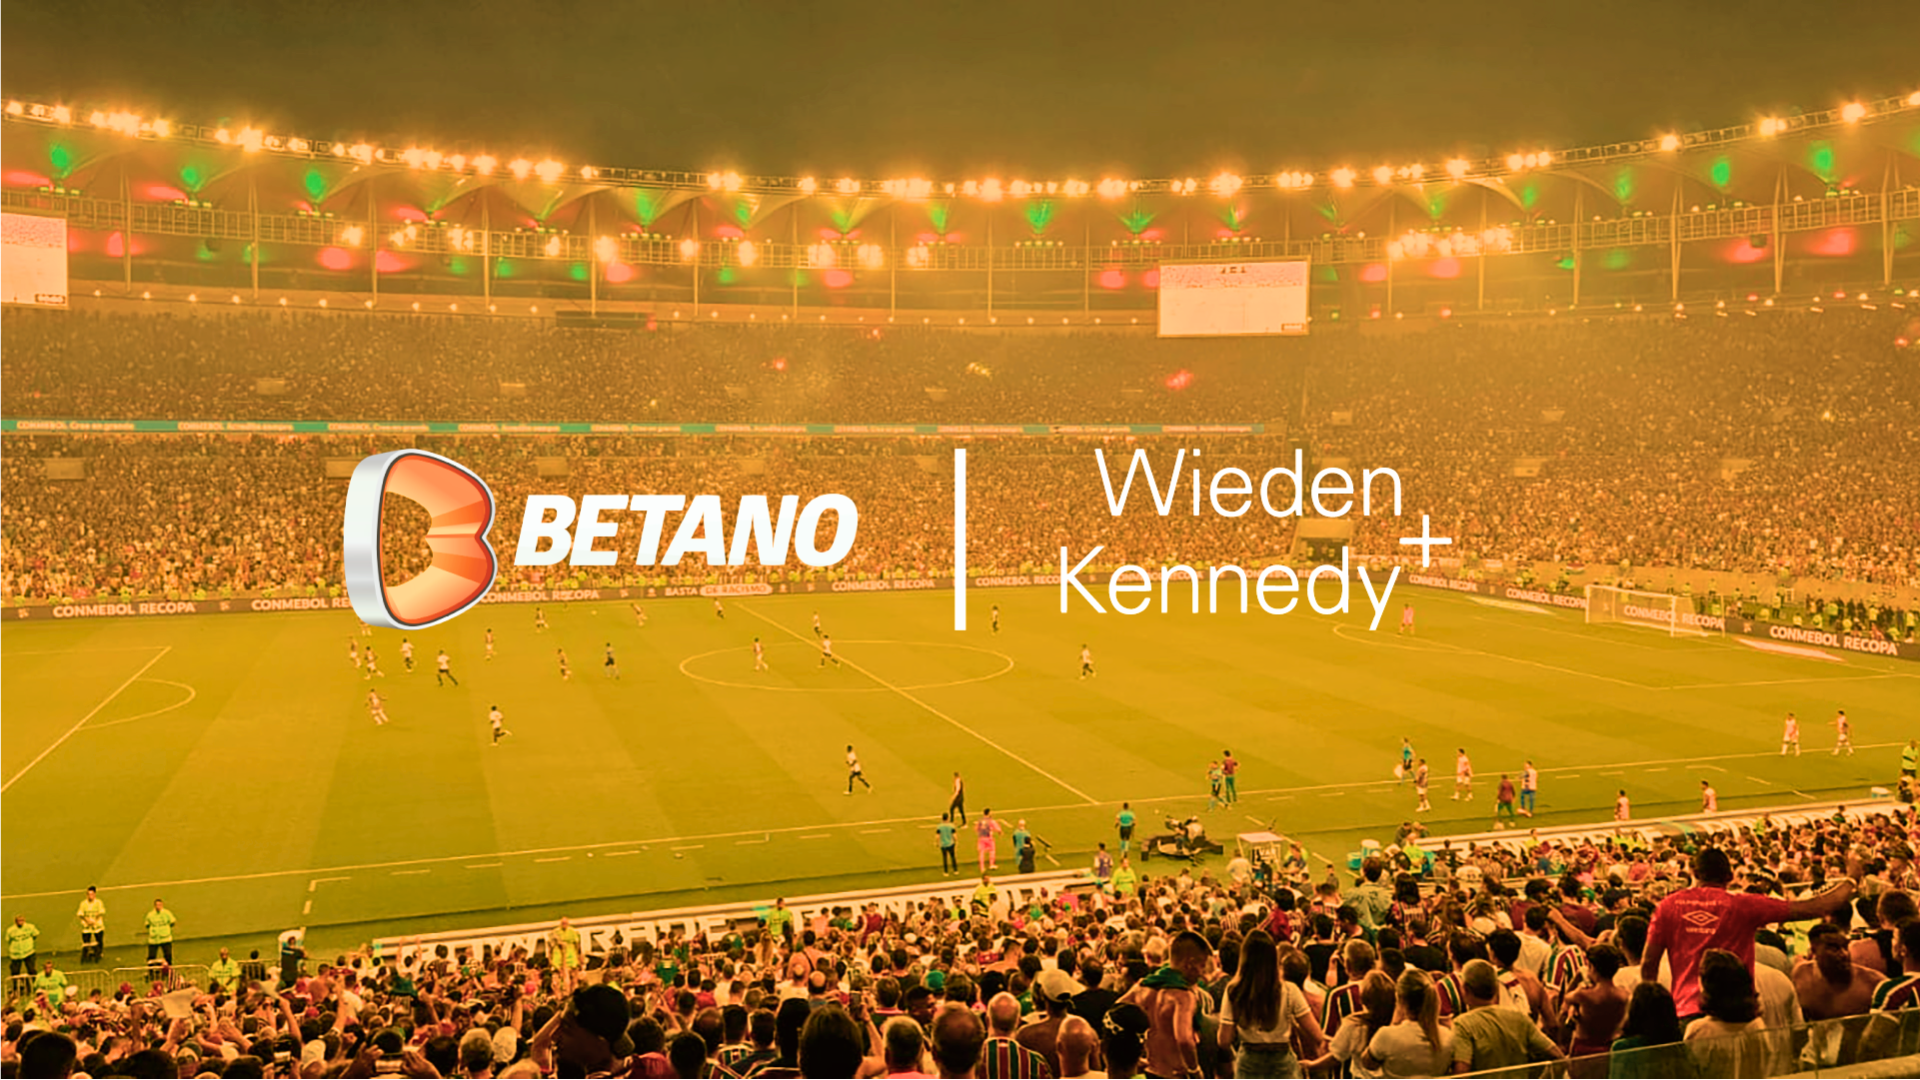 Para fortalecer sua comunicação, Betano anuncia parceria com Wieden+Kennedy SP